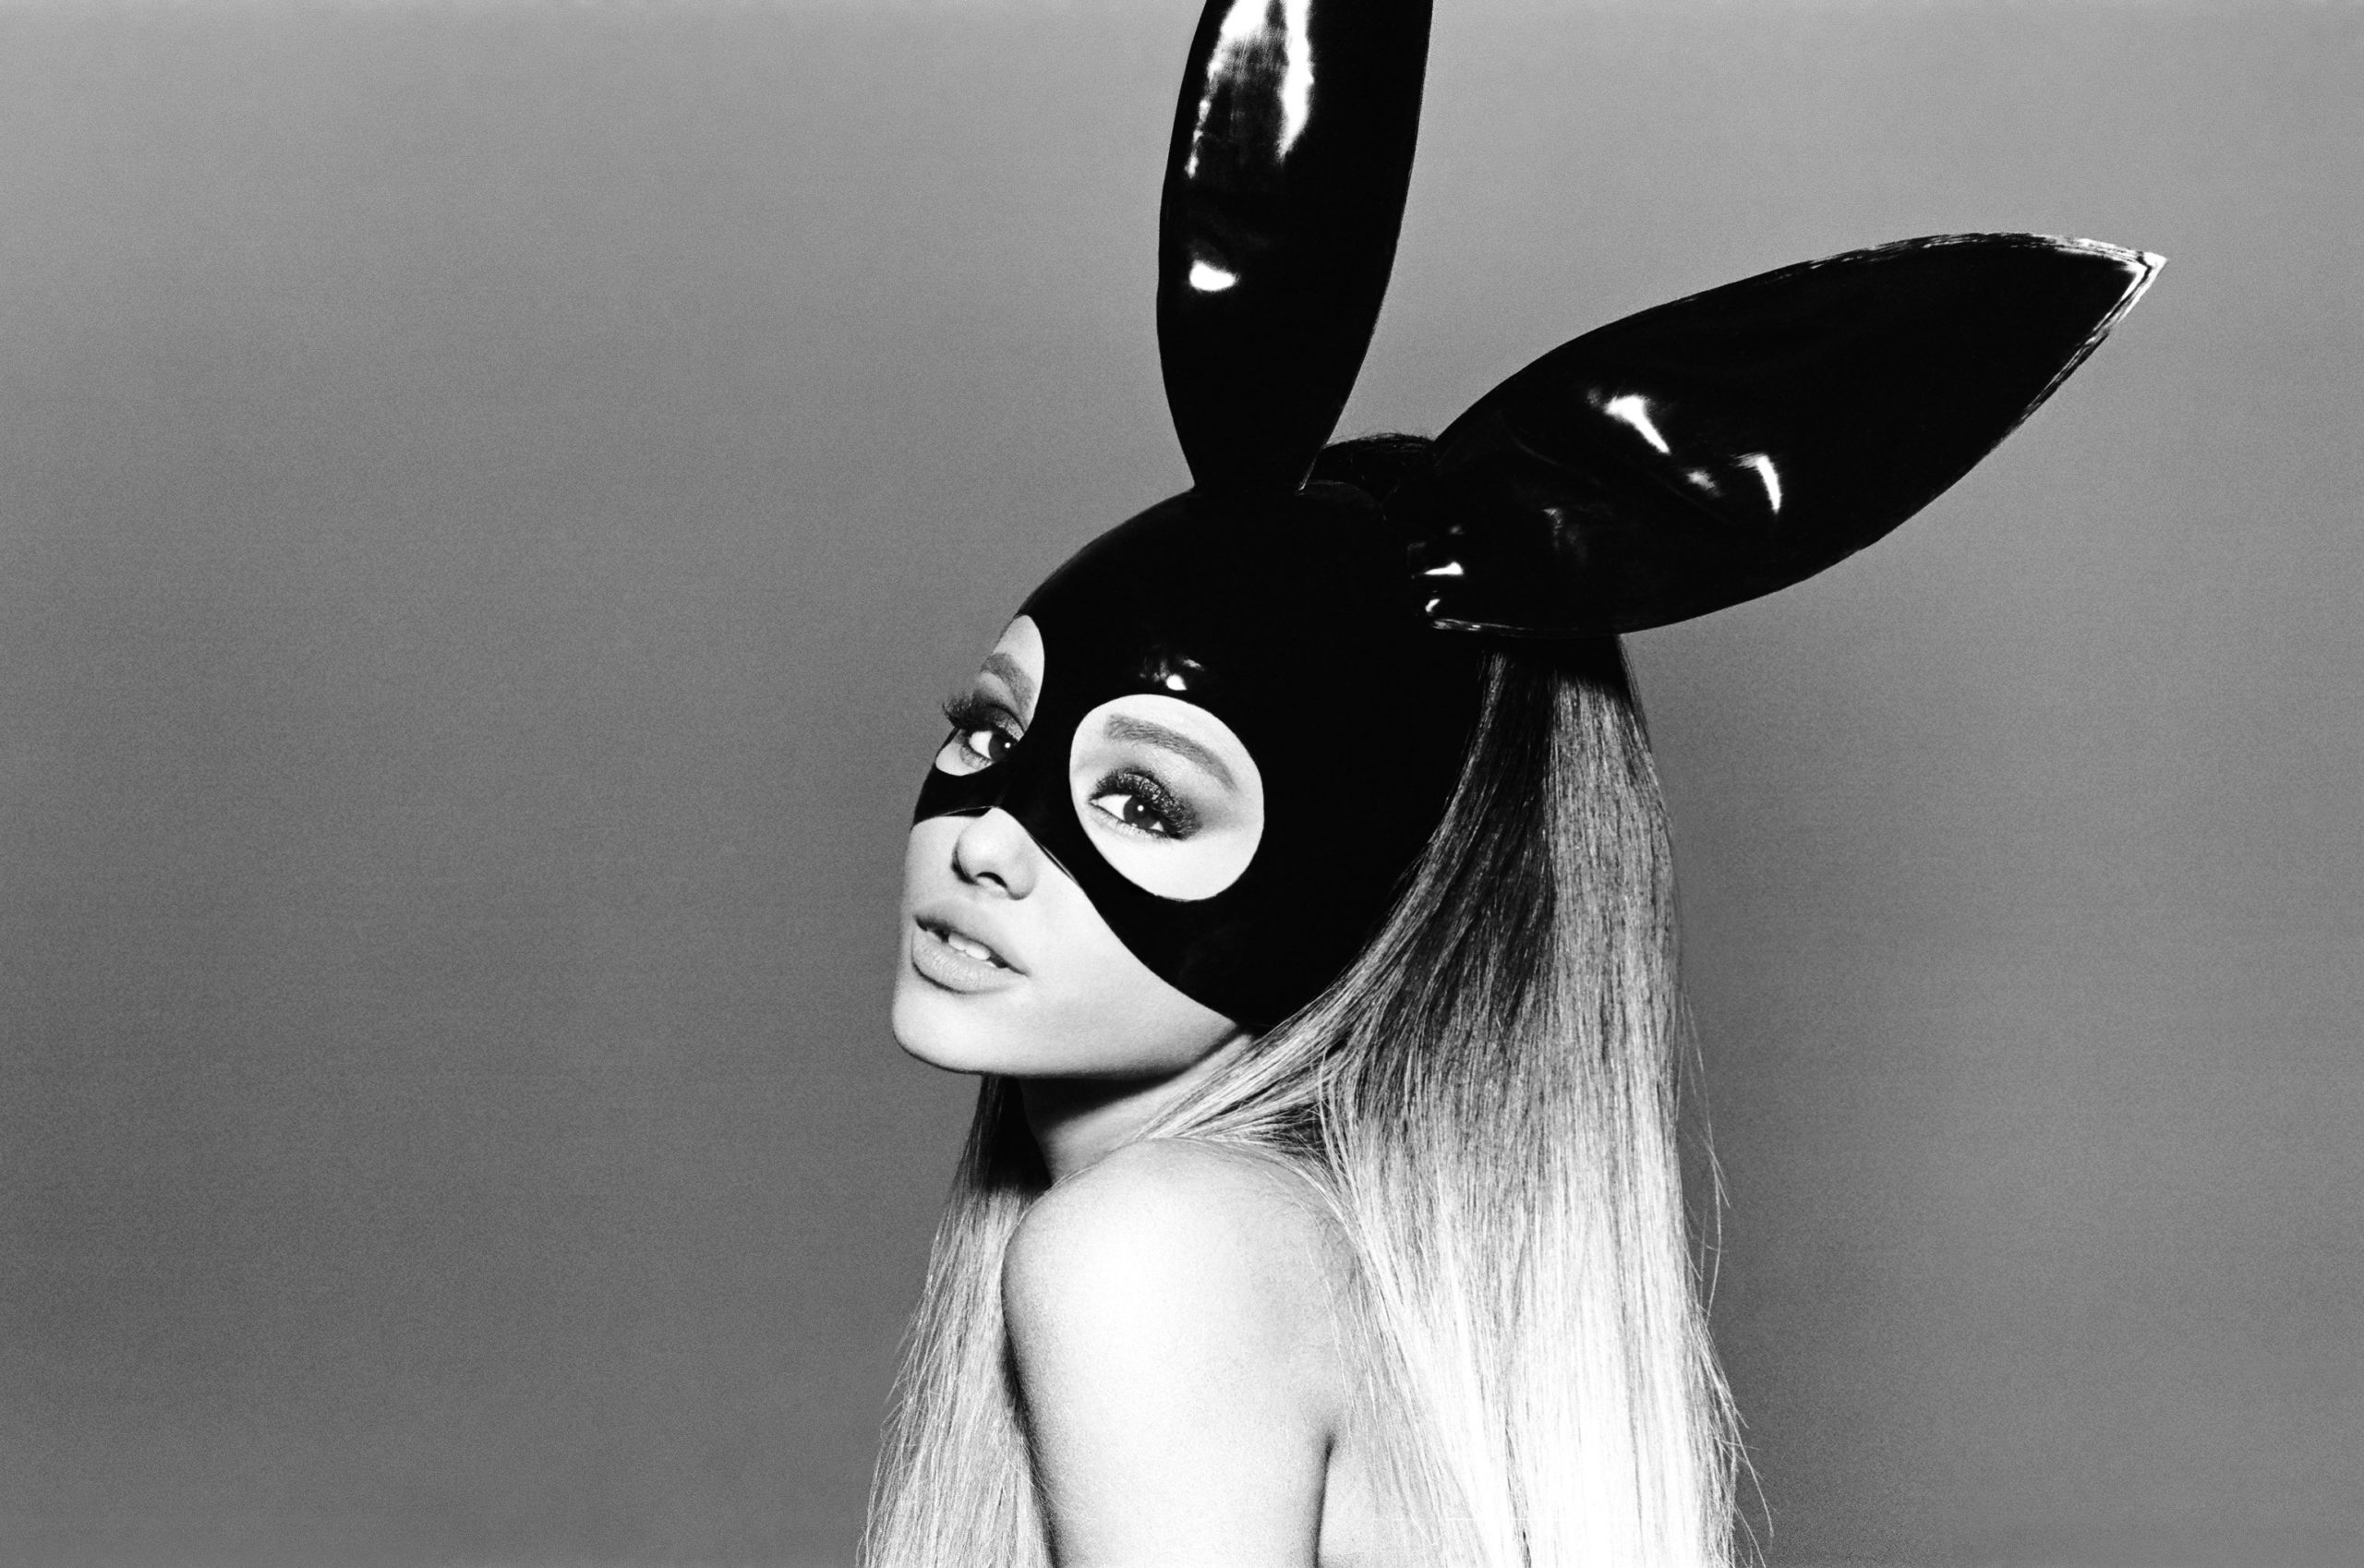 Capa do álbum Dangerous Woman. Ariana Grande se revela na imagem, de tronco para cima, inclinada para o lado. A imagem está em preto e branco. Ariana é uma mulher branca, de cabelo castanho claro. Ela usa um vestido de látex preto e uma máscara preta com orelhas de coelho.